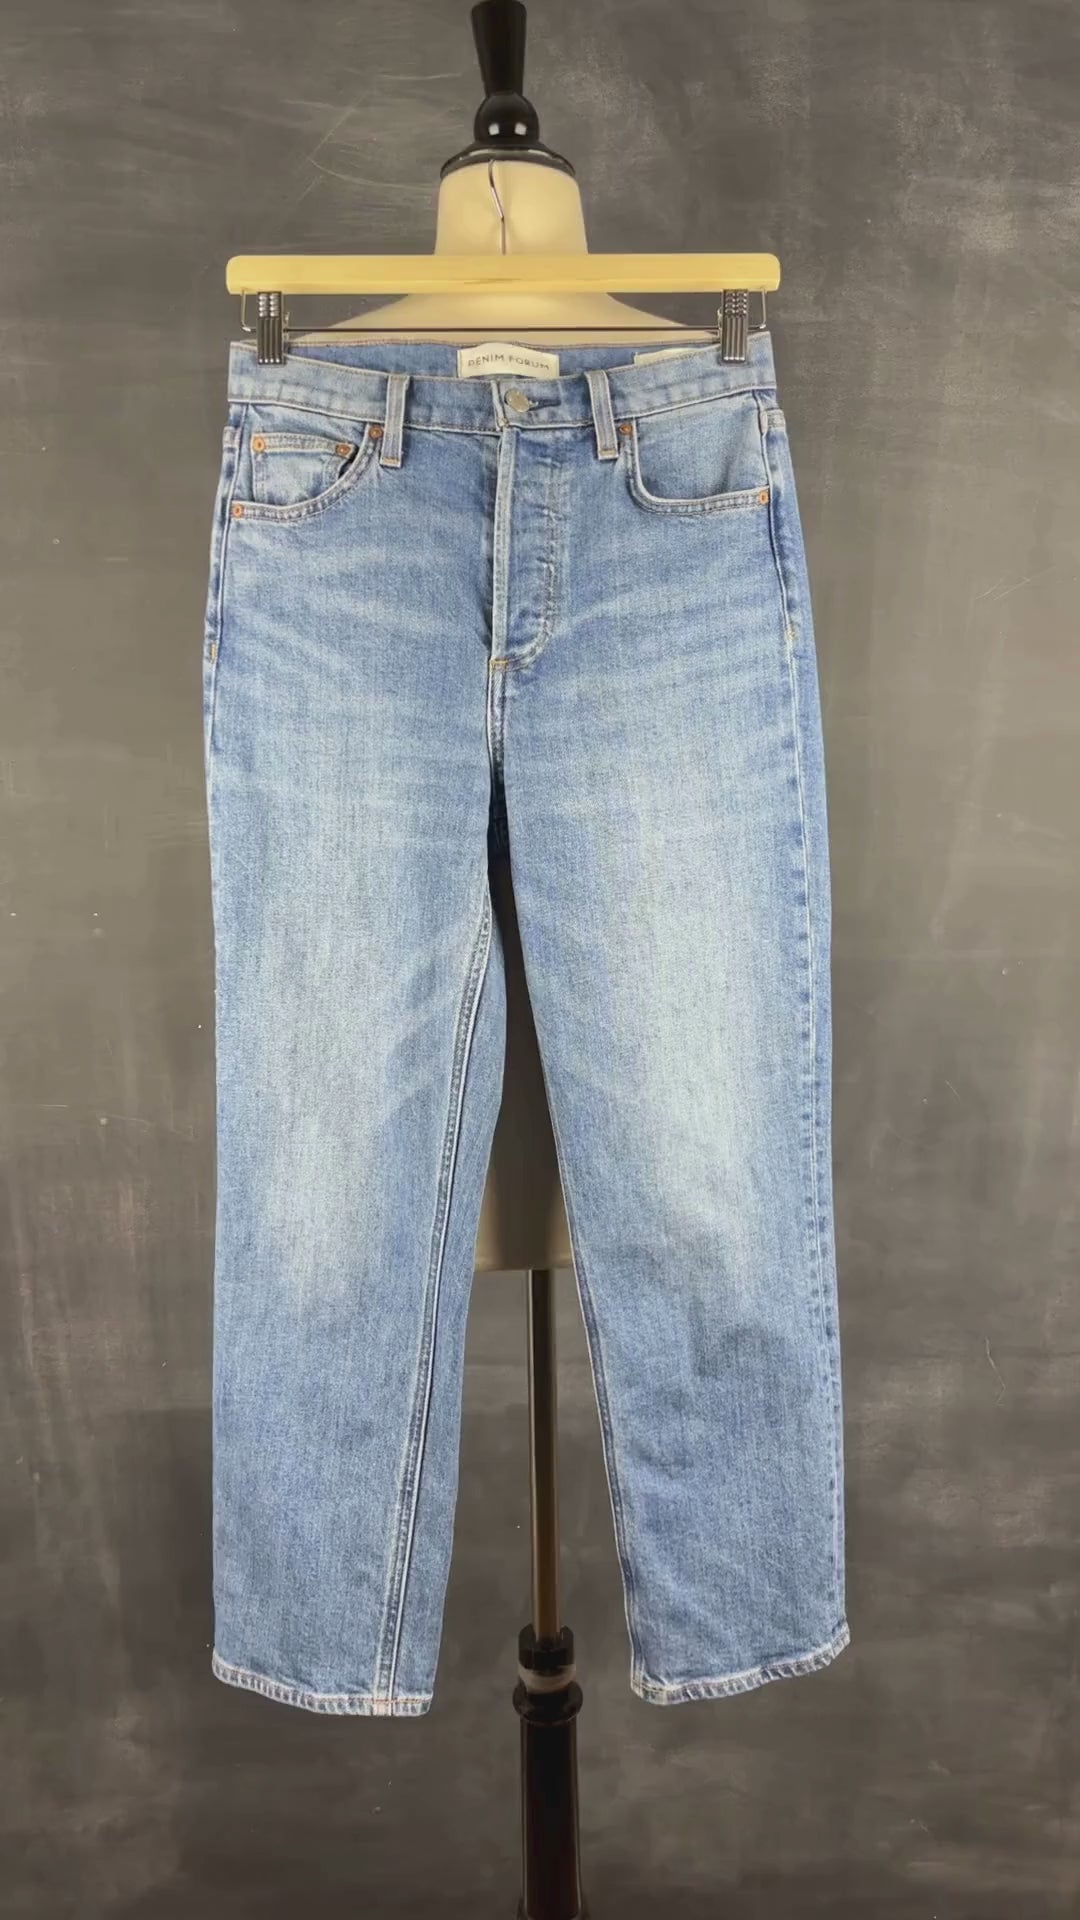 Jeans droit taille haute modèle Arlo Denim Forum, taille 26. Vue de la vidéo qui présente tous les détails du jeans.